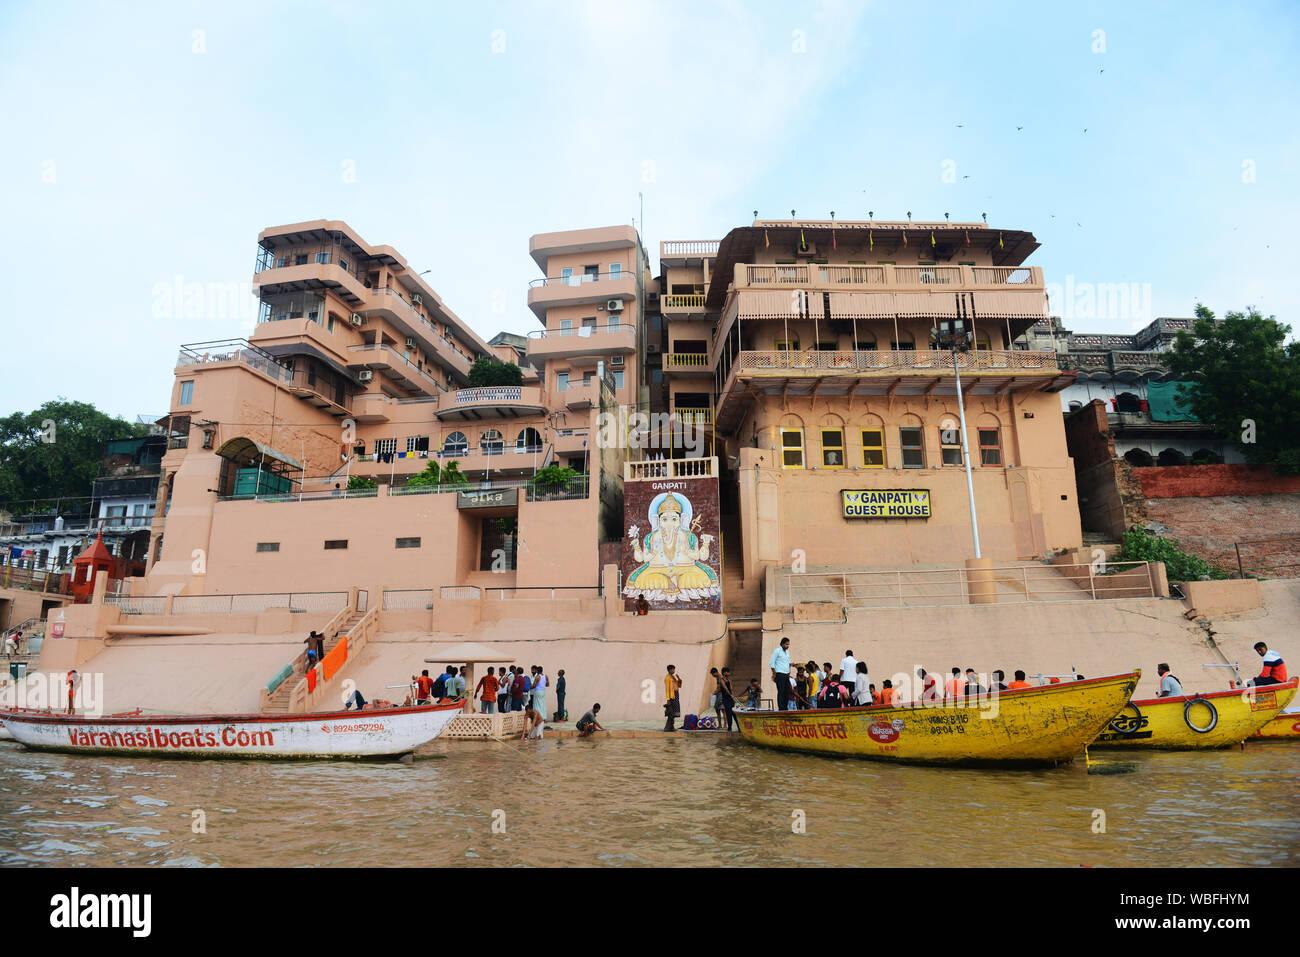 Ganpati guest house on Meer Ghat in Varanasi, India. Stock Photo